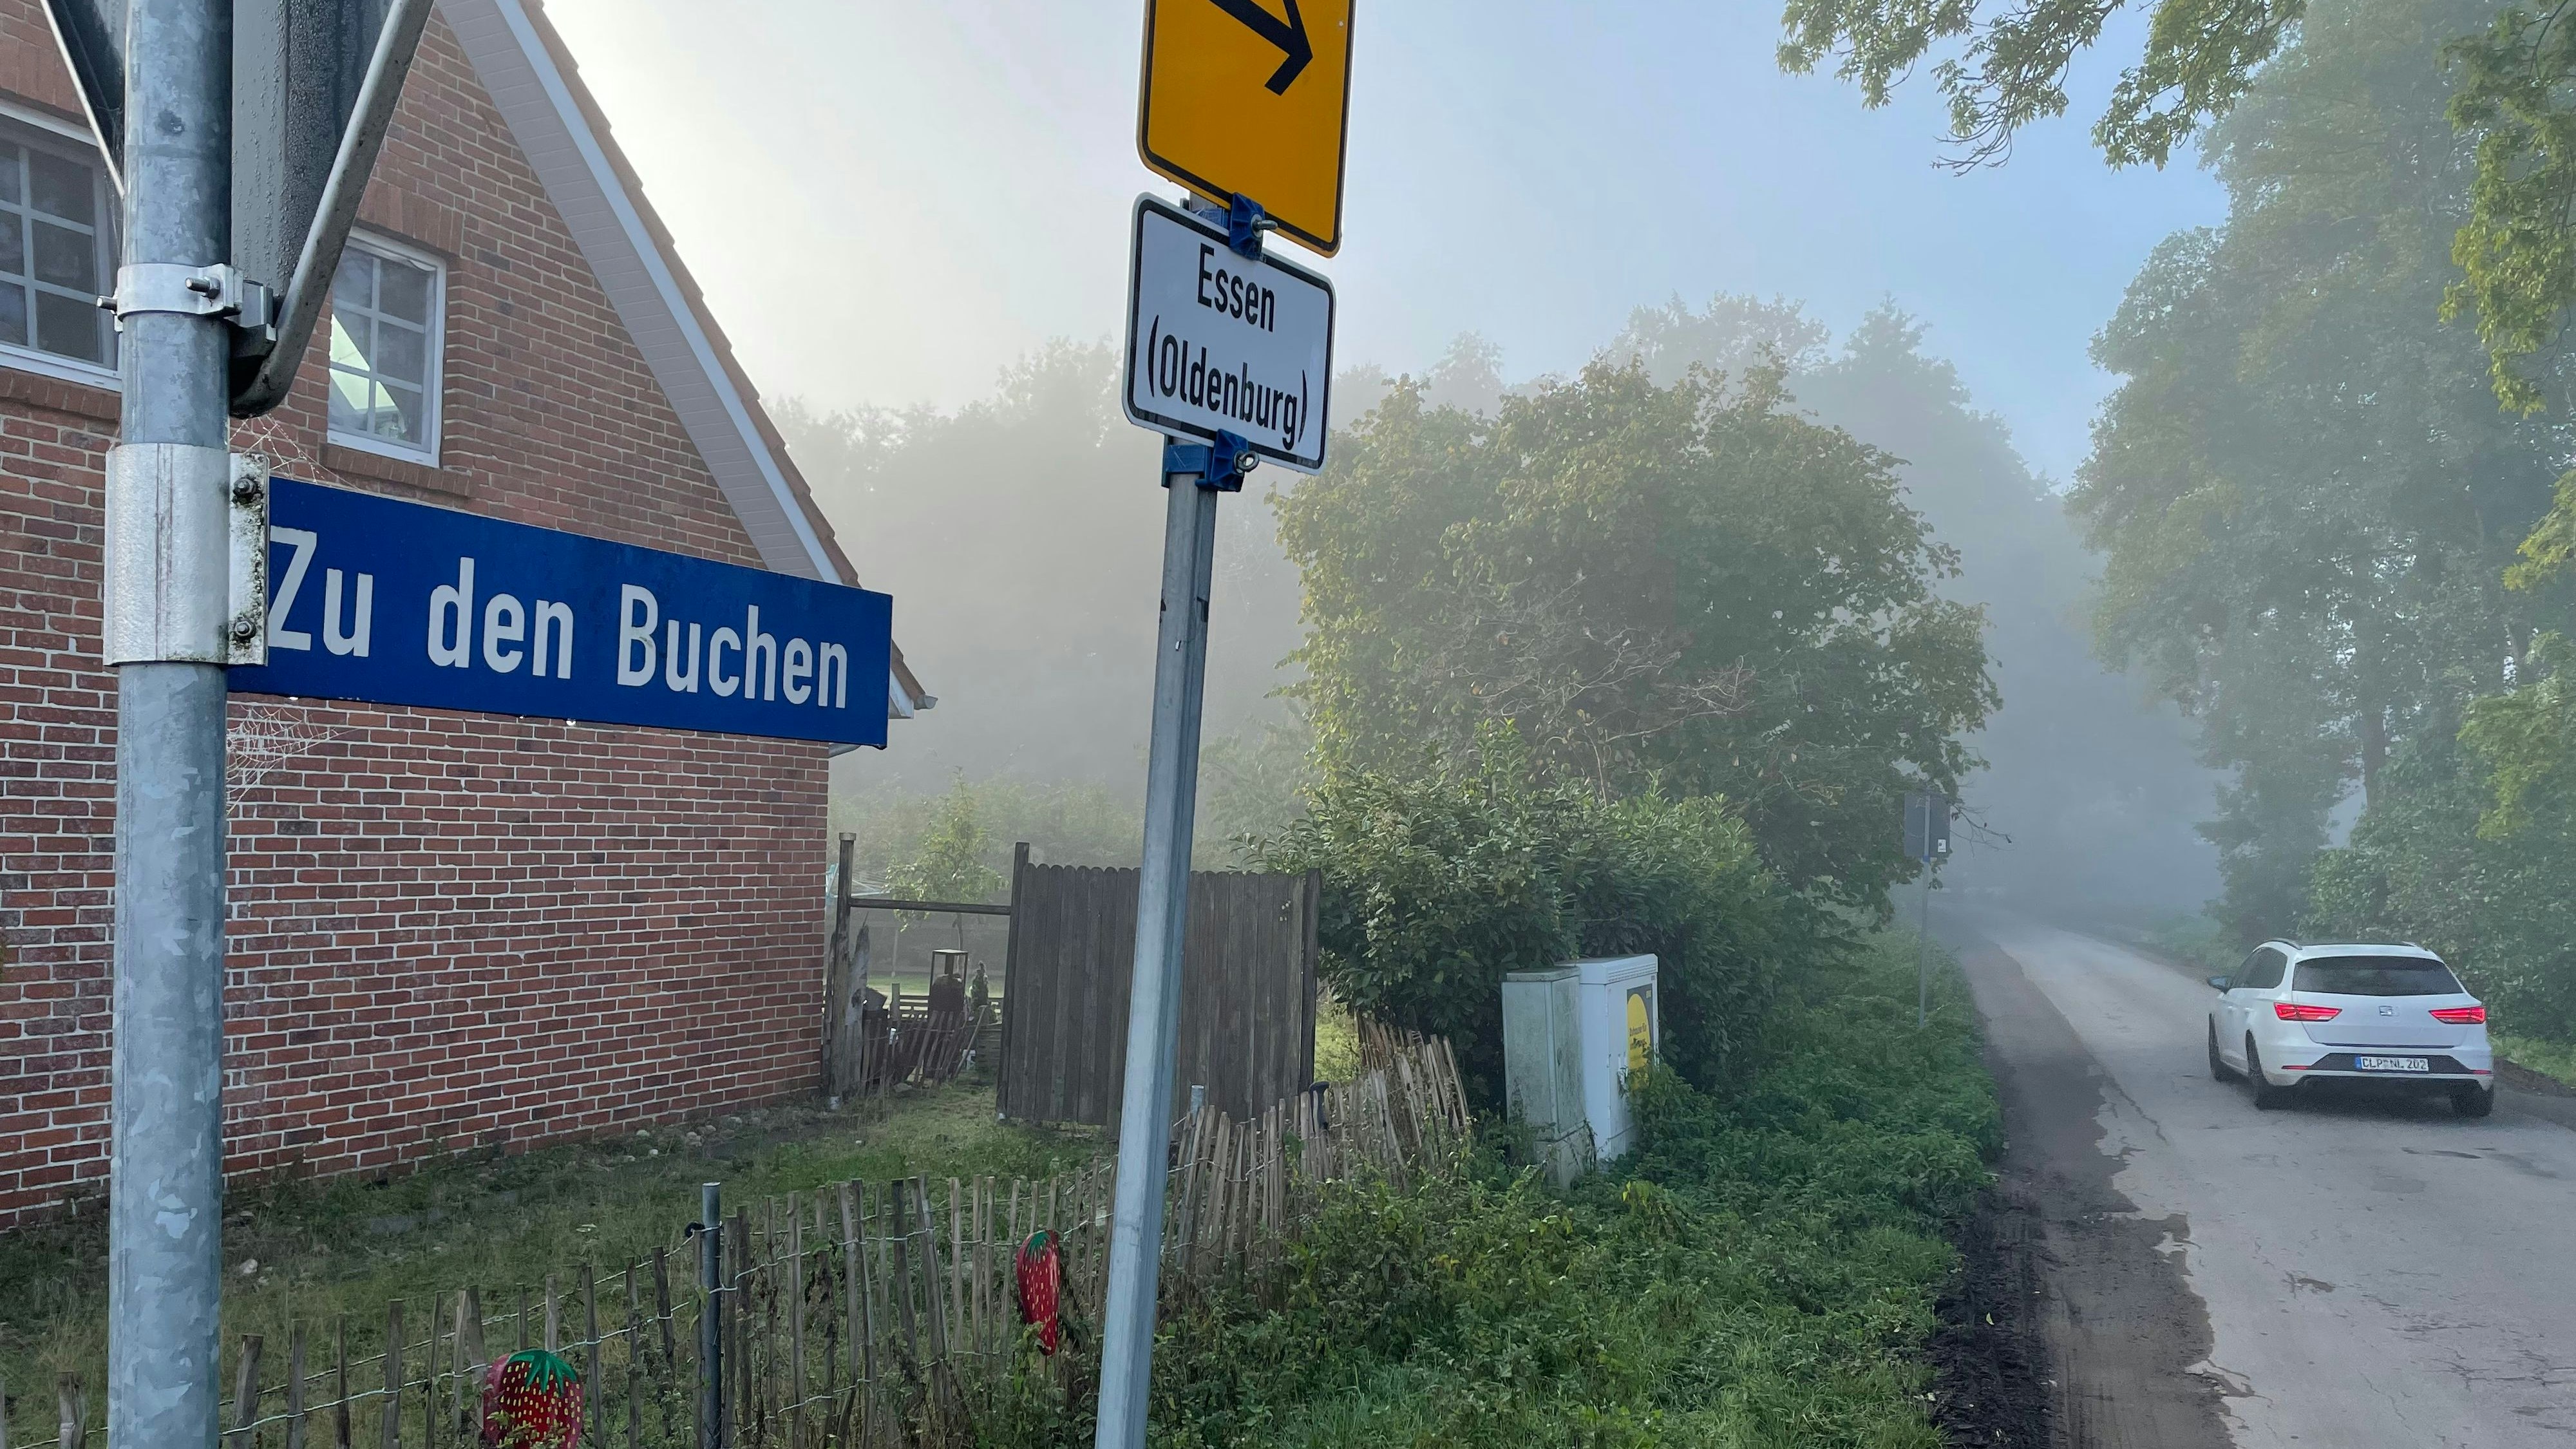 Schleichweg in Bunnen: Die Straße "Zu den Buchen" wird von Autofahrern entgegen ihrer Bestimmung als Umleitung genutzt. Foto: G. Meyer